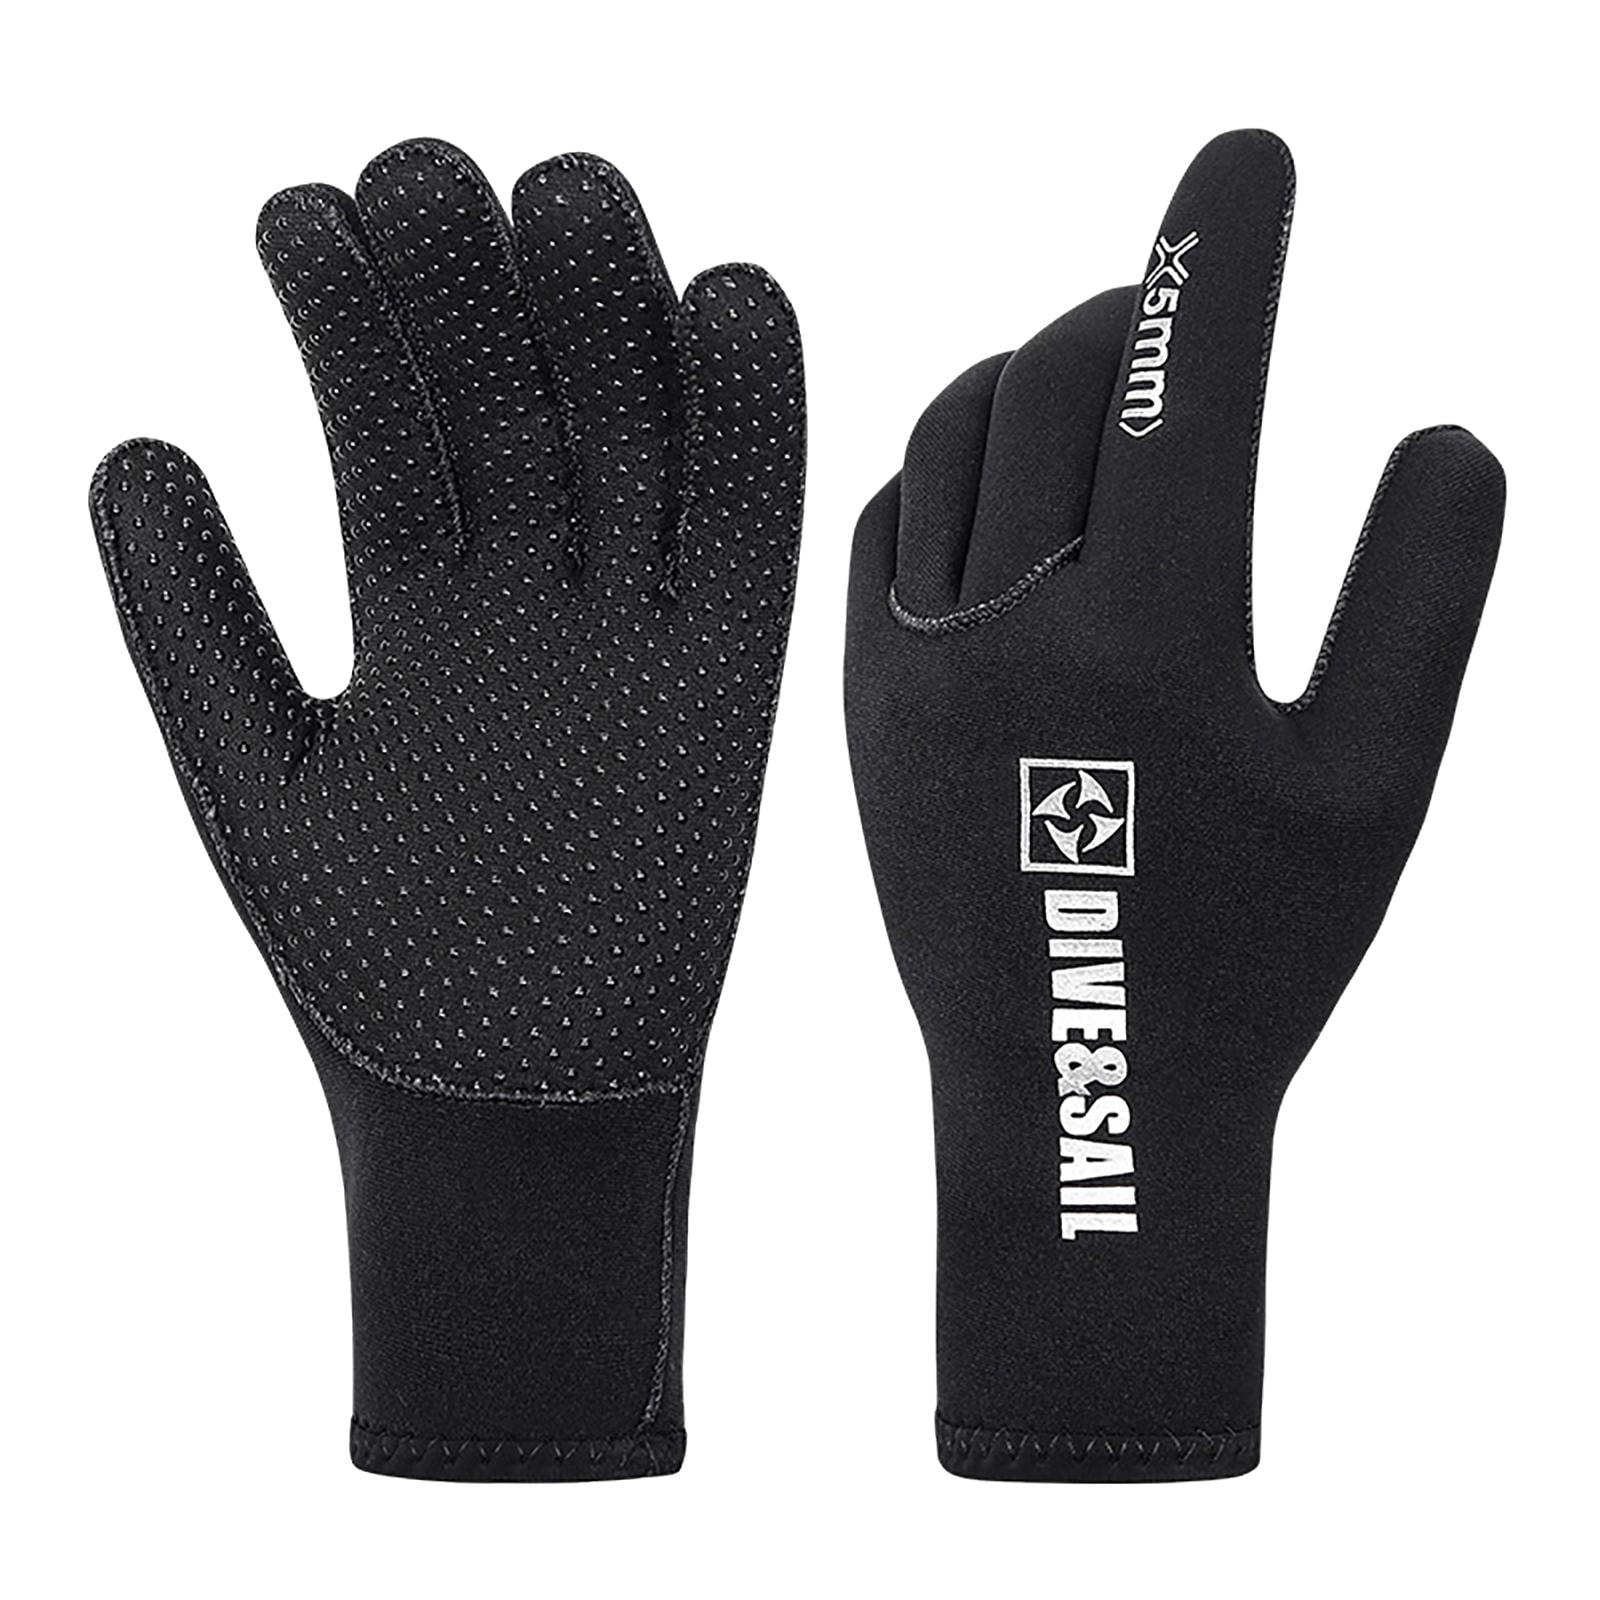 Black Paddle Gloves Canoeing Paddle Neoprene Mittens/Gloves/Hand Protection Winter Winner Kayaking 